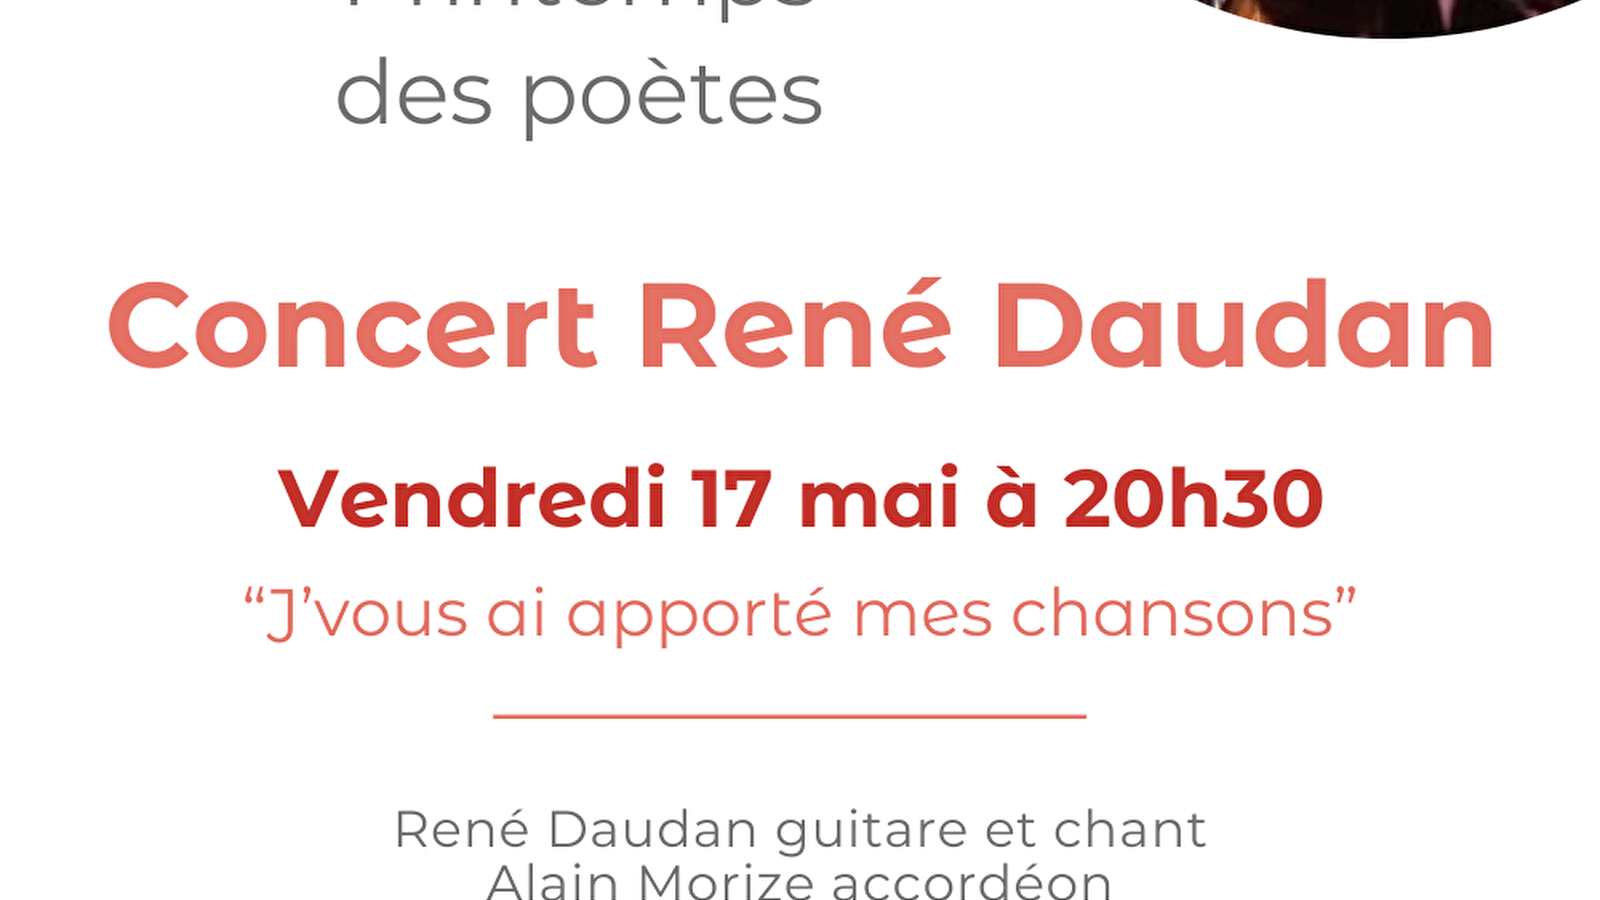 Concert door René Daudan in Précy-sous-Thil